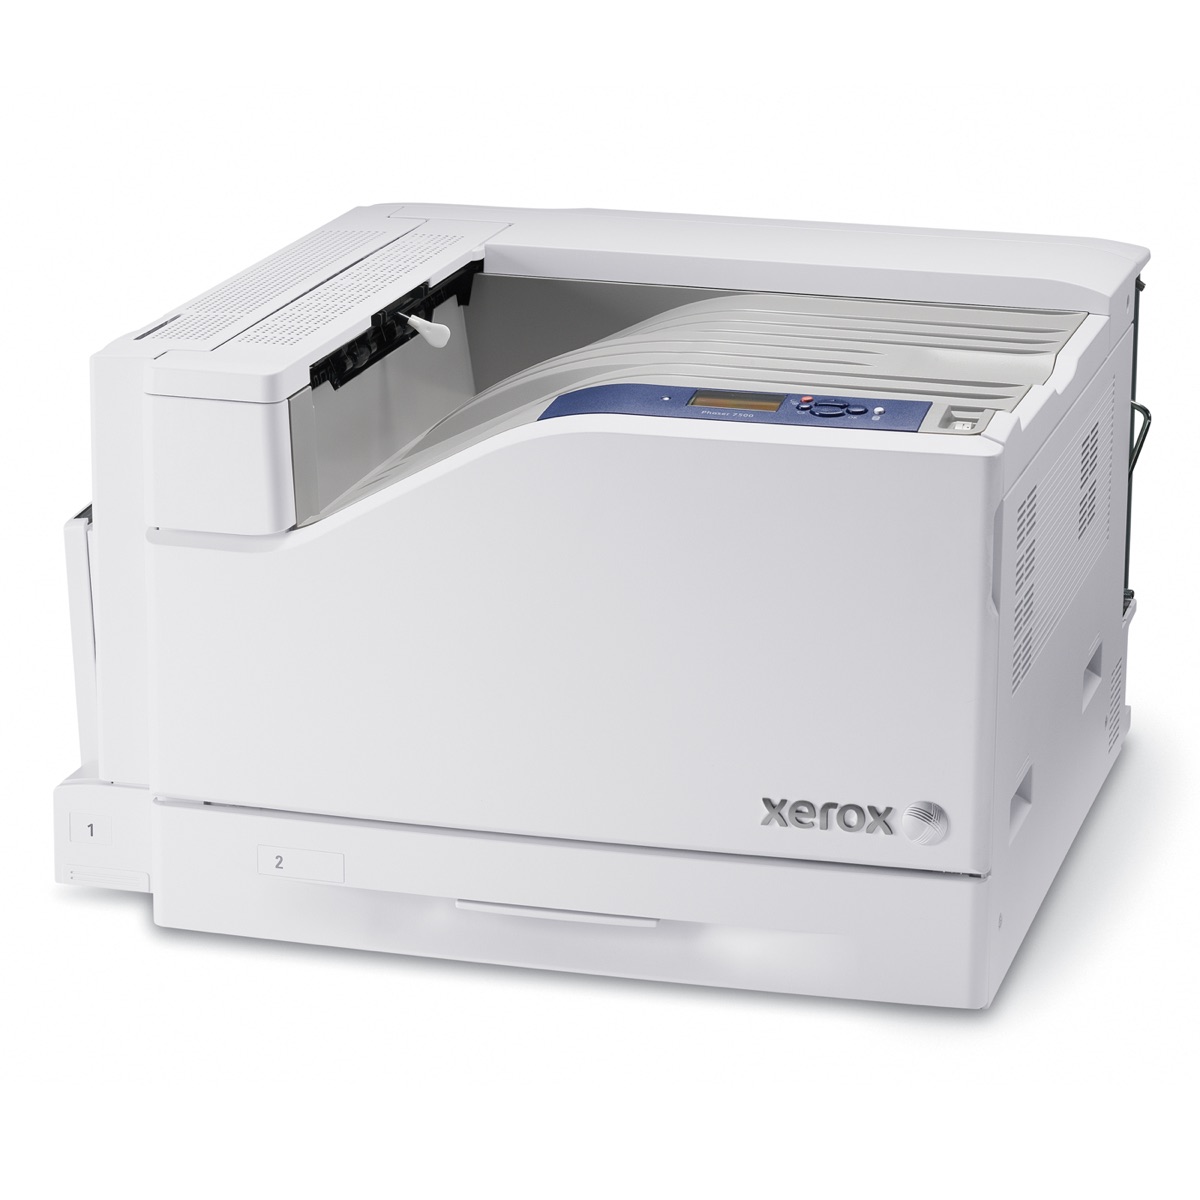 Xerox Printers:  The Xerox Phaser 7500 Series Printer